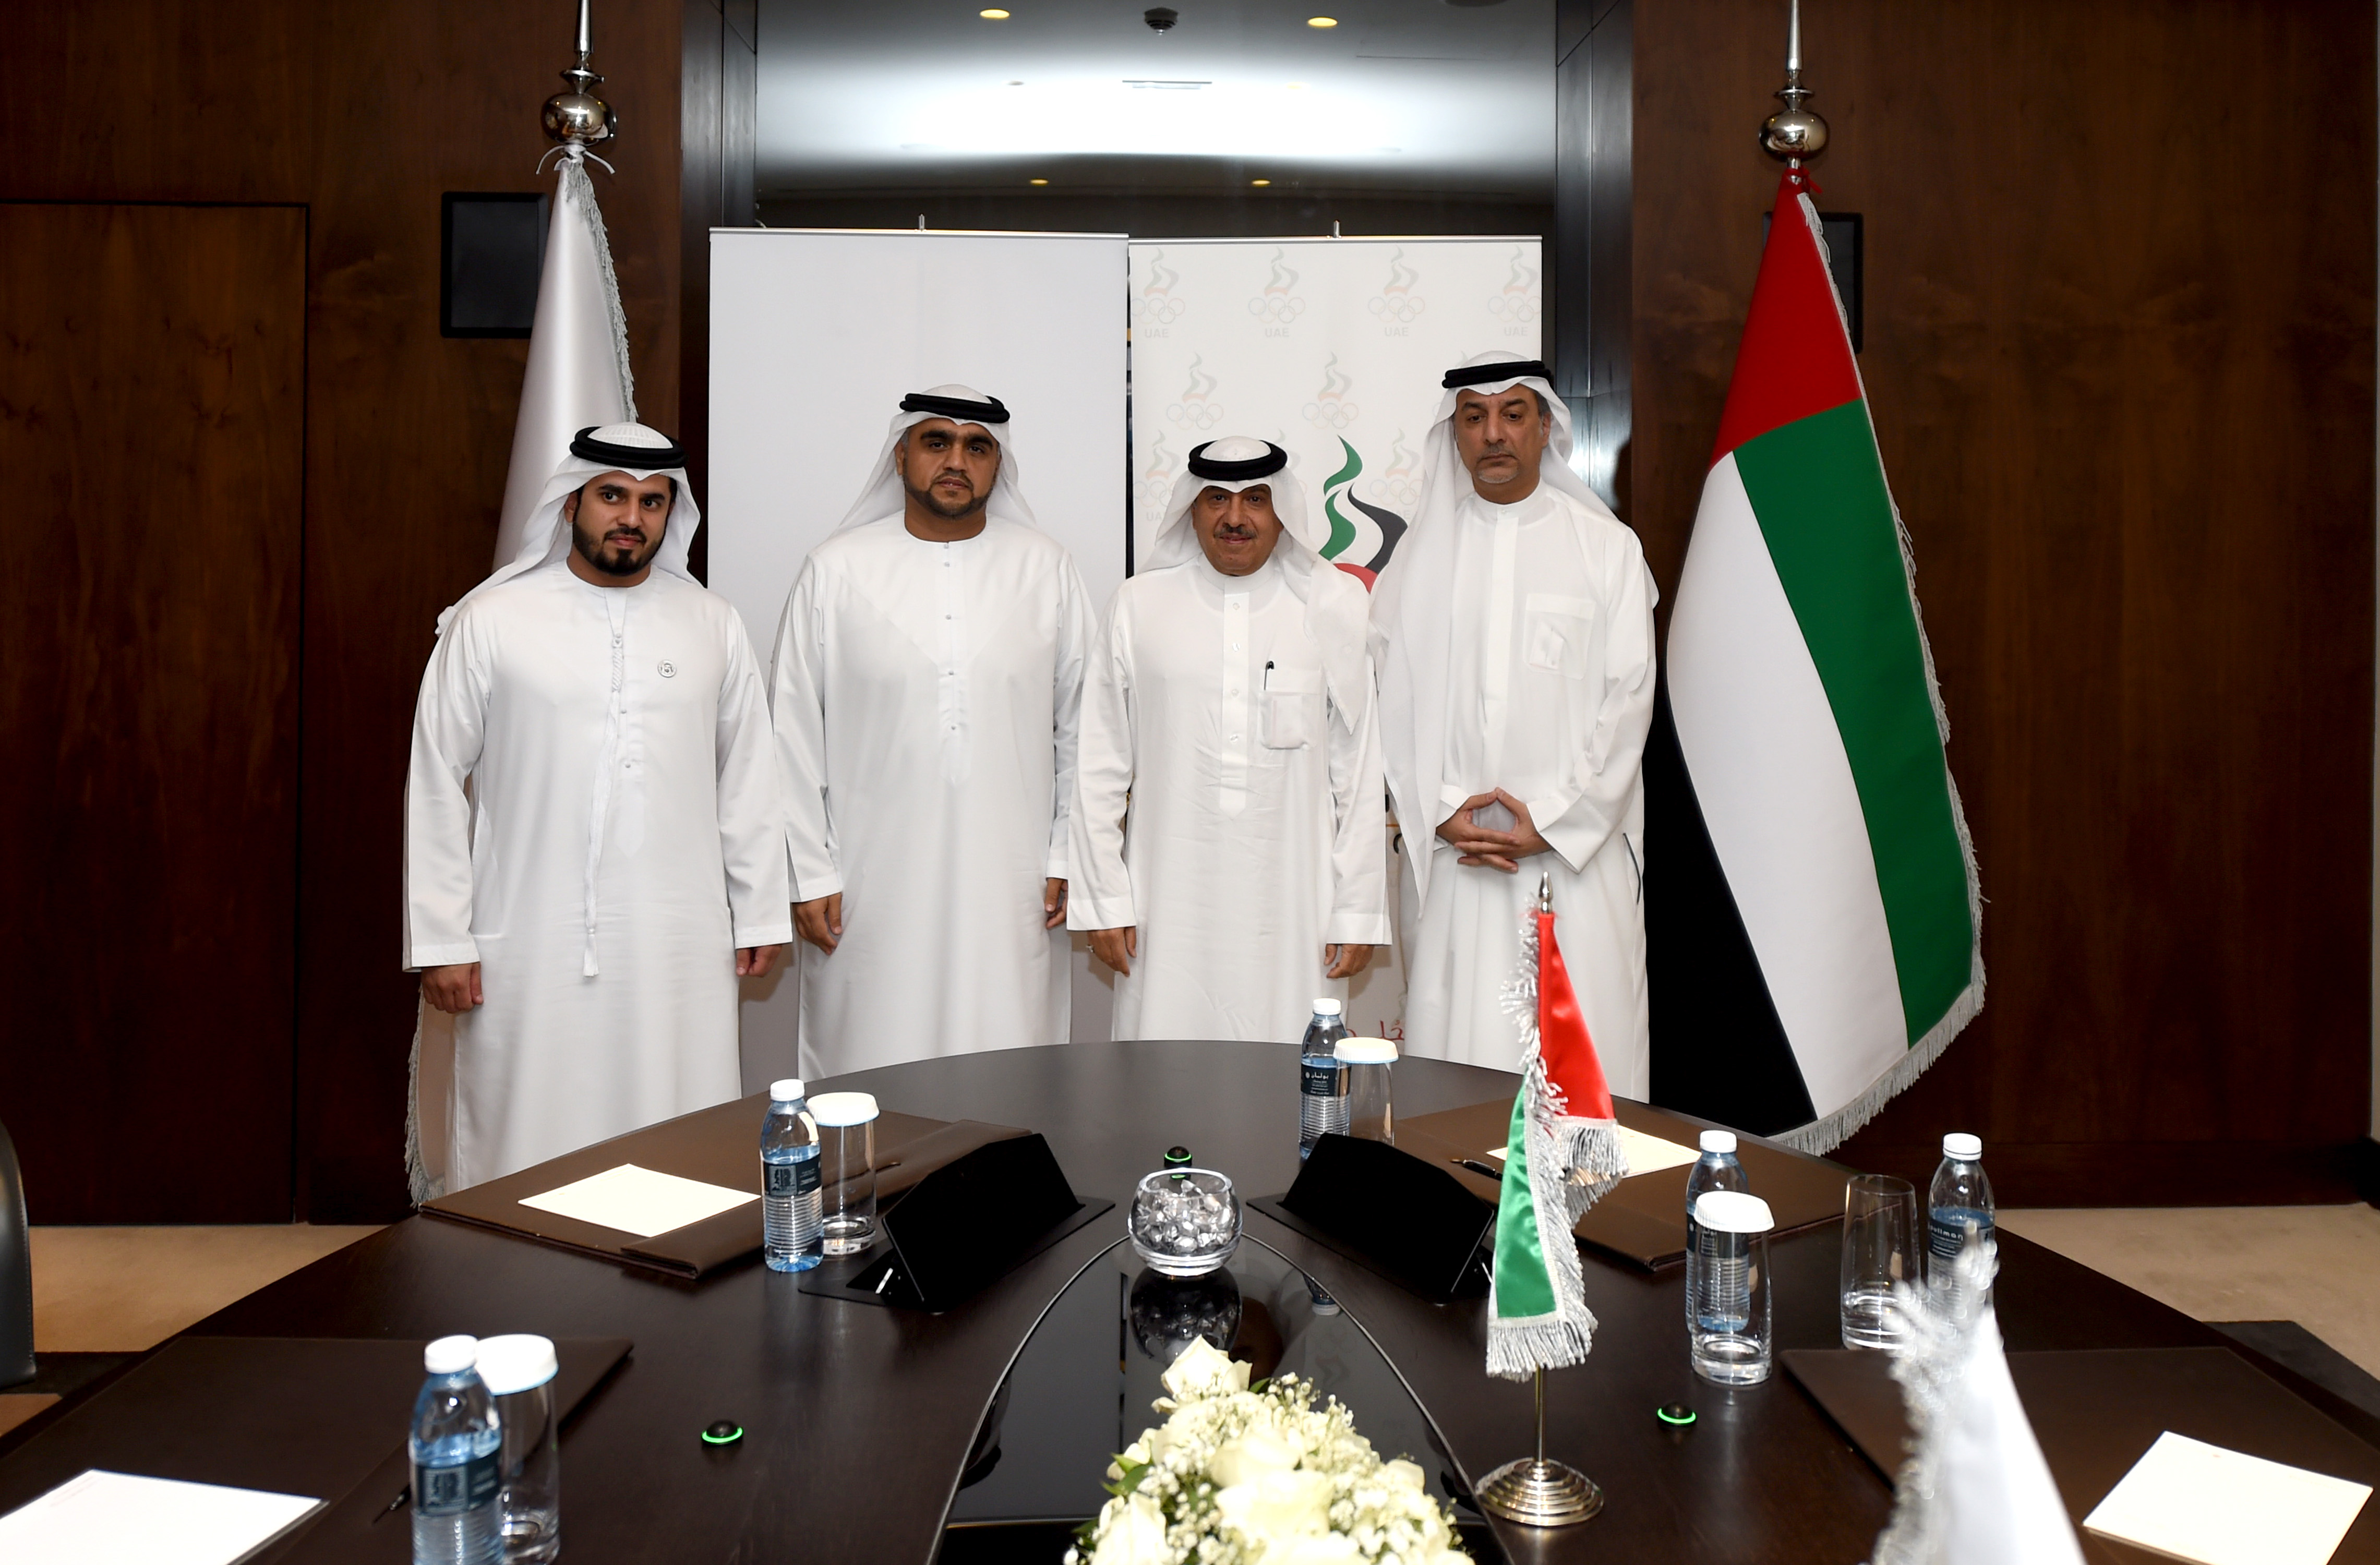  زيارة أمين عام الاتحاد مقر اللجنة الأولمبية الإماراتية